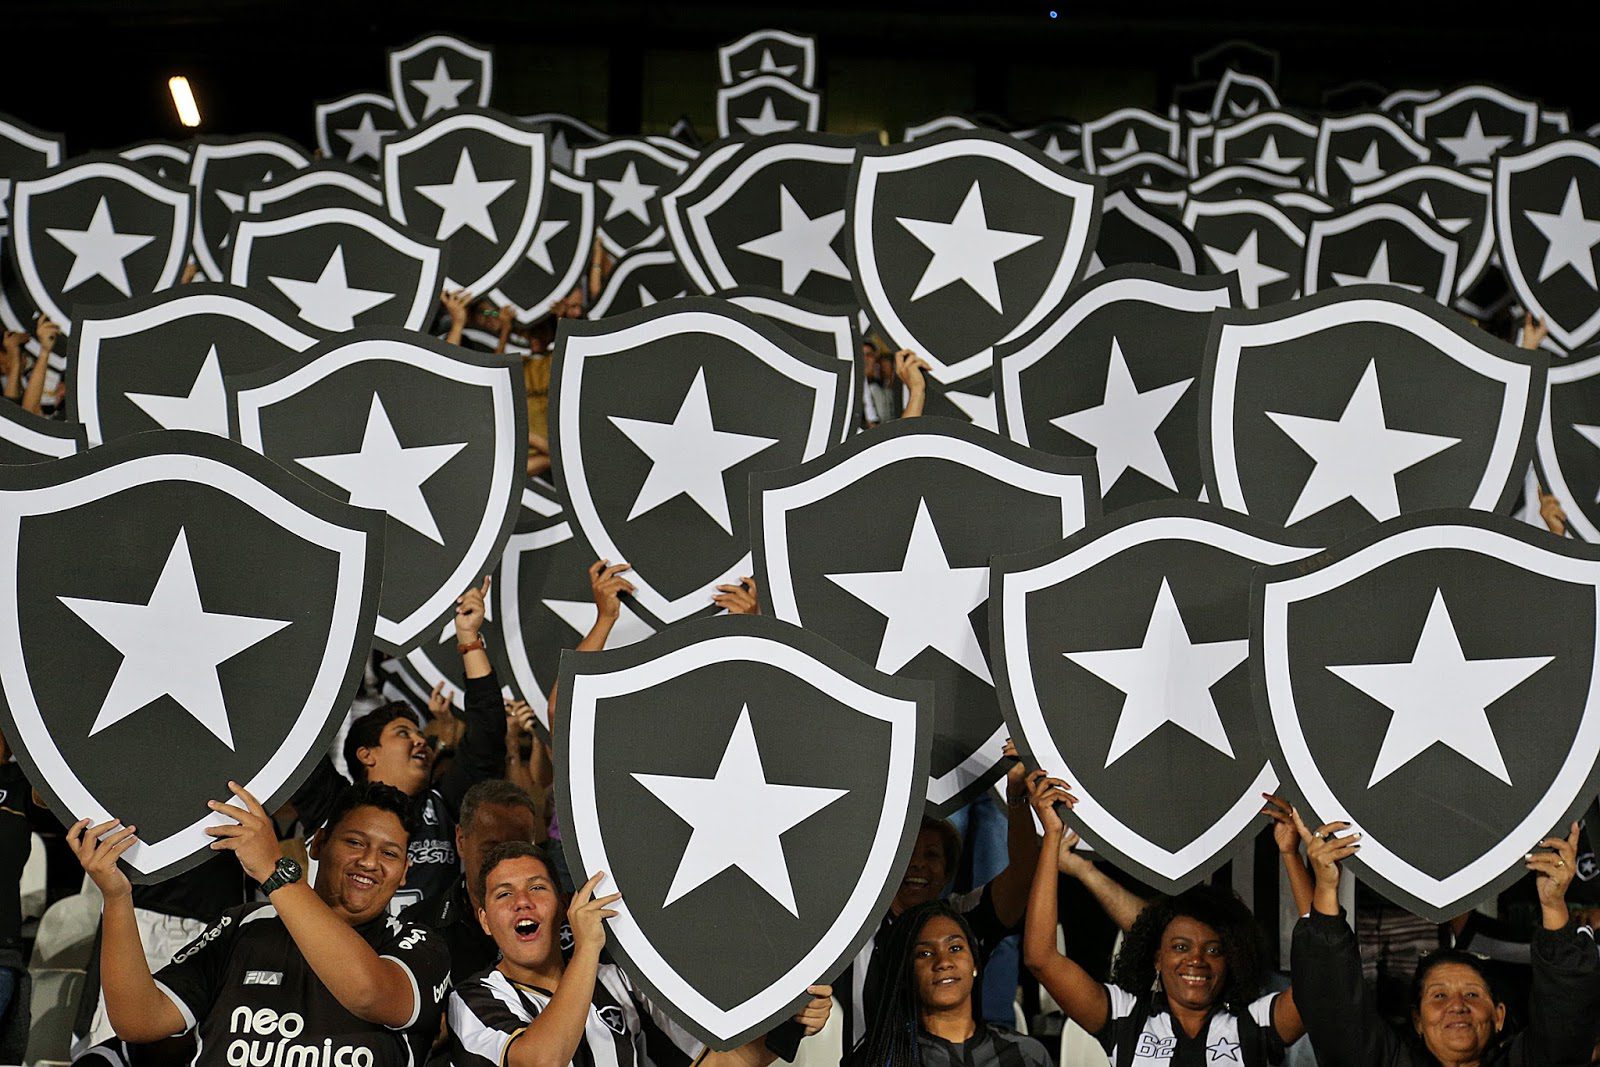 Day 6 - Botafogo da Gama Match Day Experience